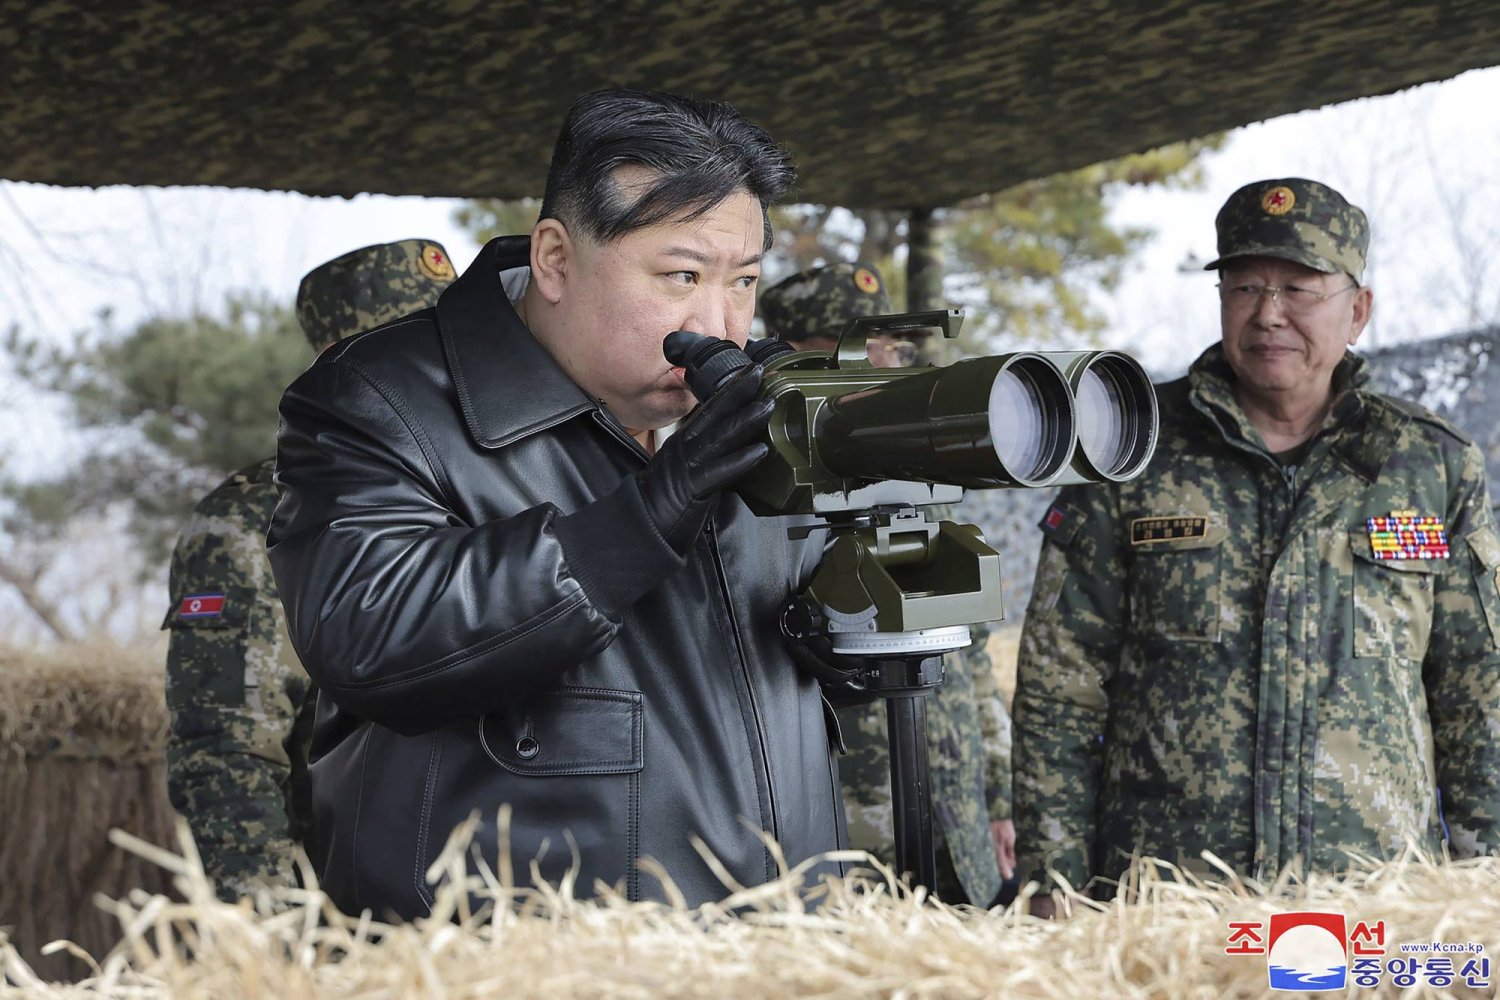 زعيم كوريا الشمالية يشرف على مناورة تحاكي “هجوماً نووياً مضاداً”